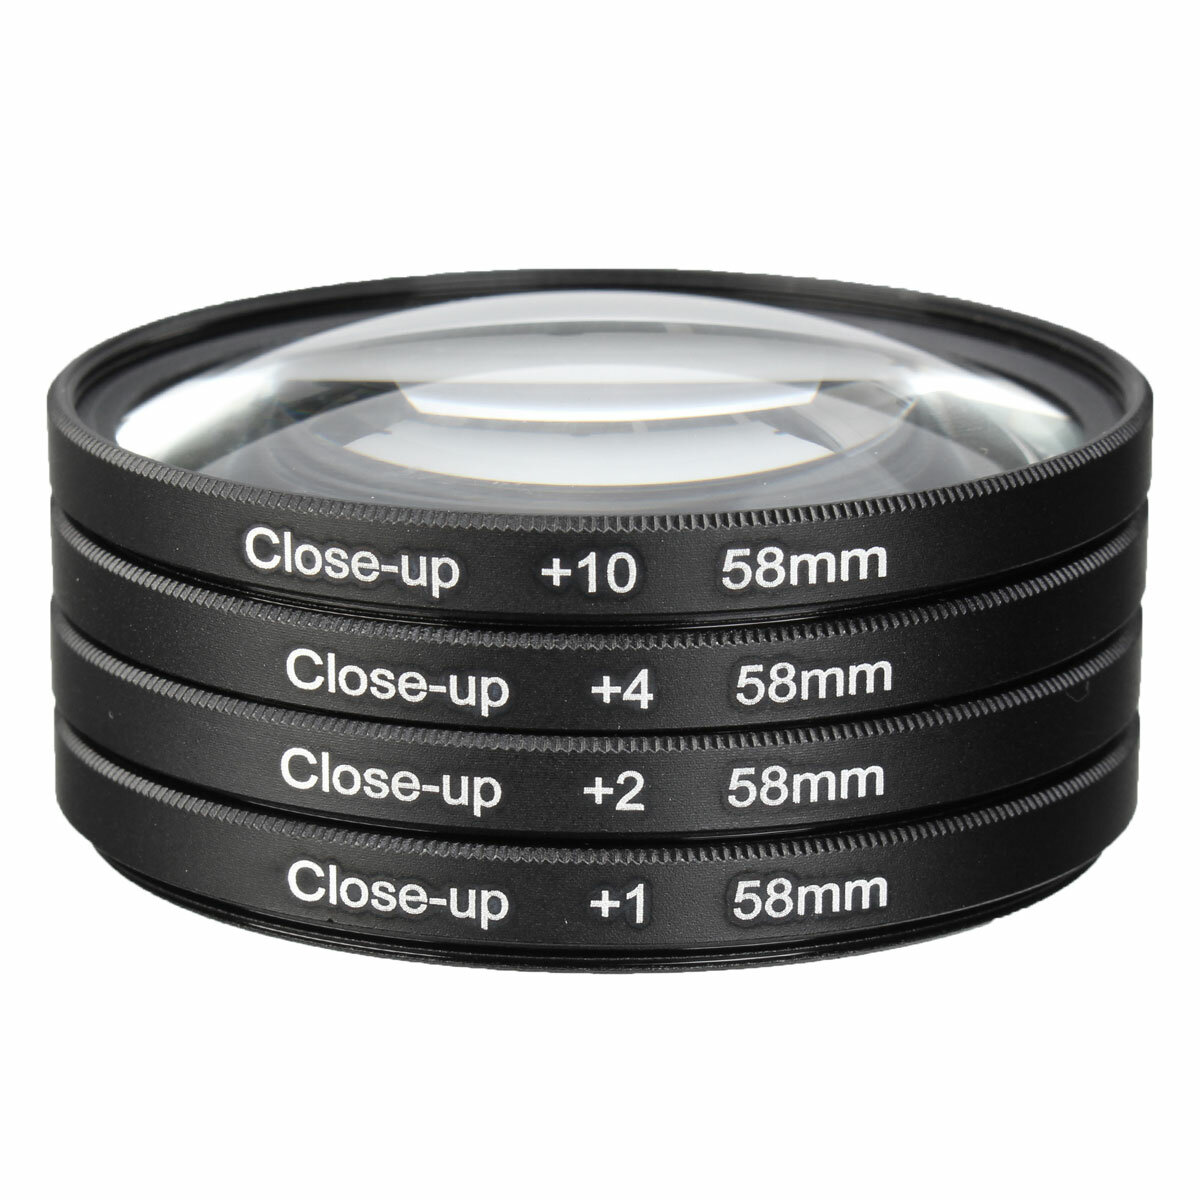 Lupa óptica Vbestlife1 Kit de Filtro de Lente Macro de 58 mm para cámaras Puede Usar los filtros Individualmente o Combi Primer Plano Macro de Vidrio óptico +1 +2 +4 +10 Kit de Filtro de Lente 